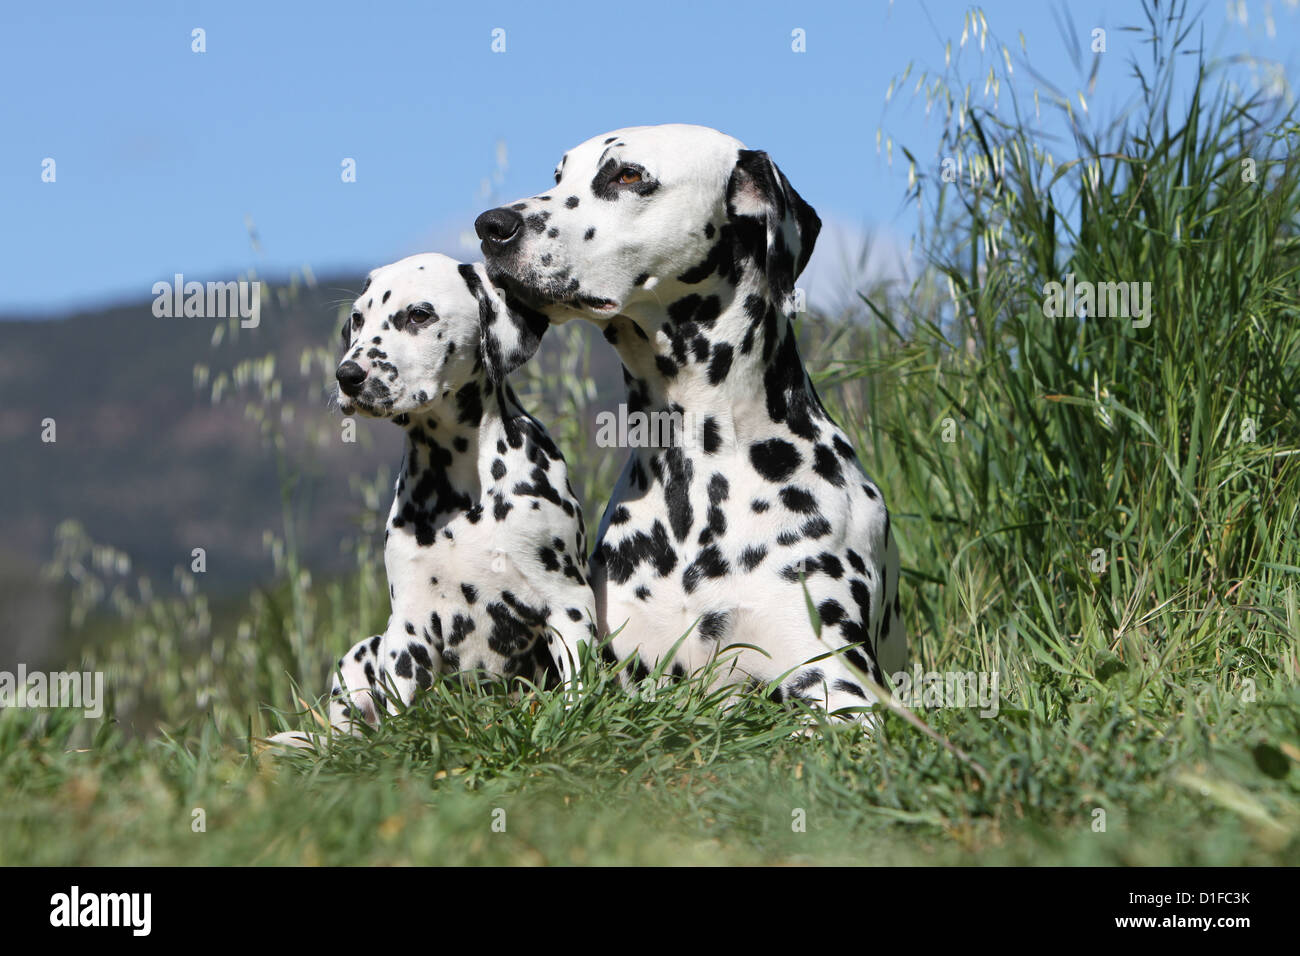 Hund Dalmatiner / Dalmatiner / Dalmatien Erwachsene und Welpen  Stockfotografie - Alamy